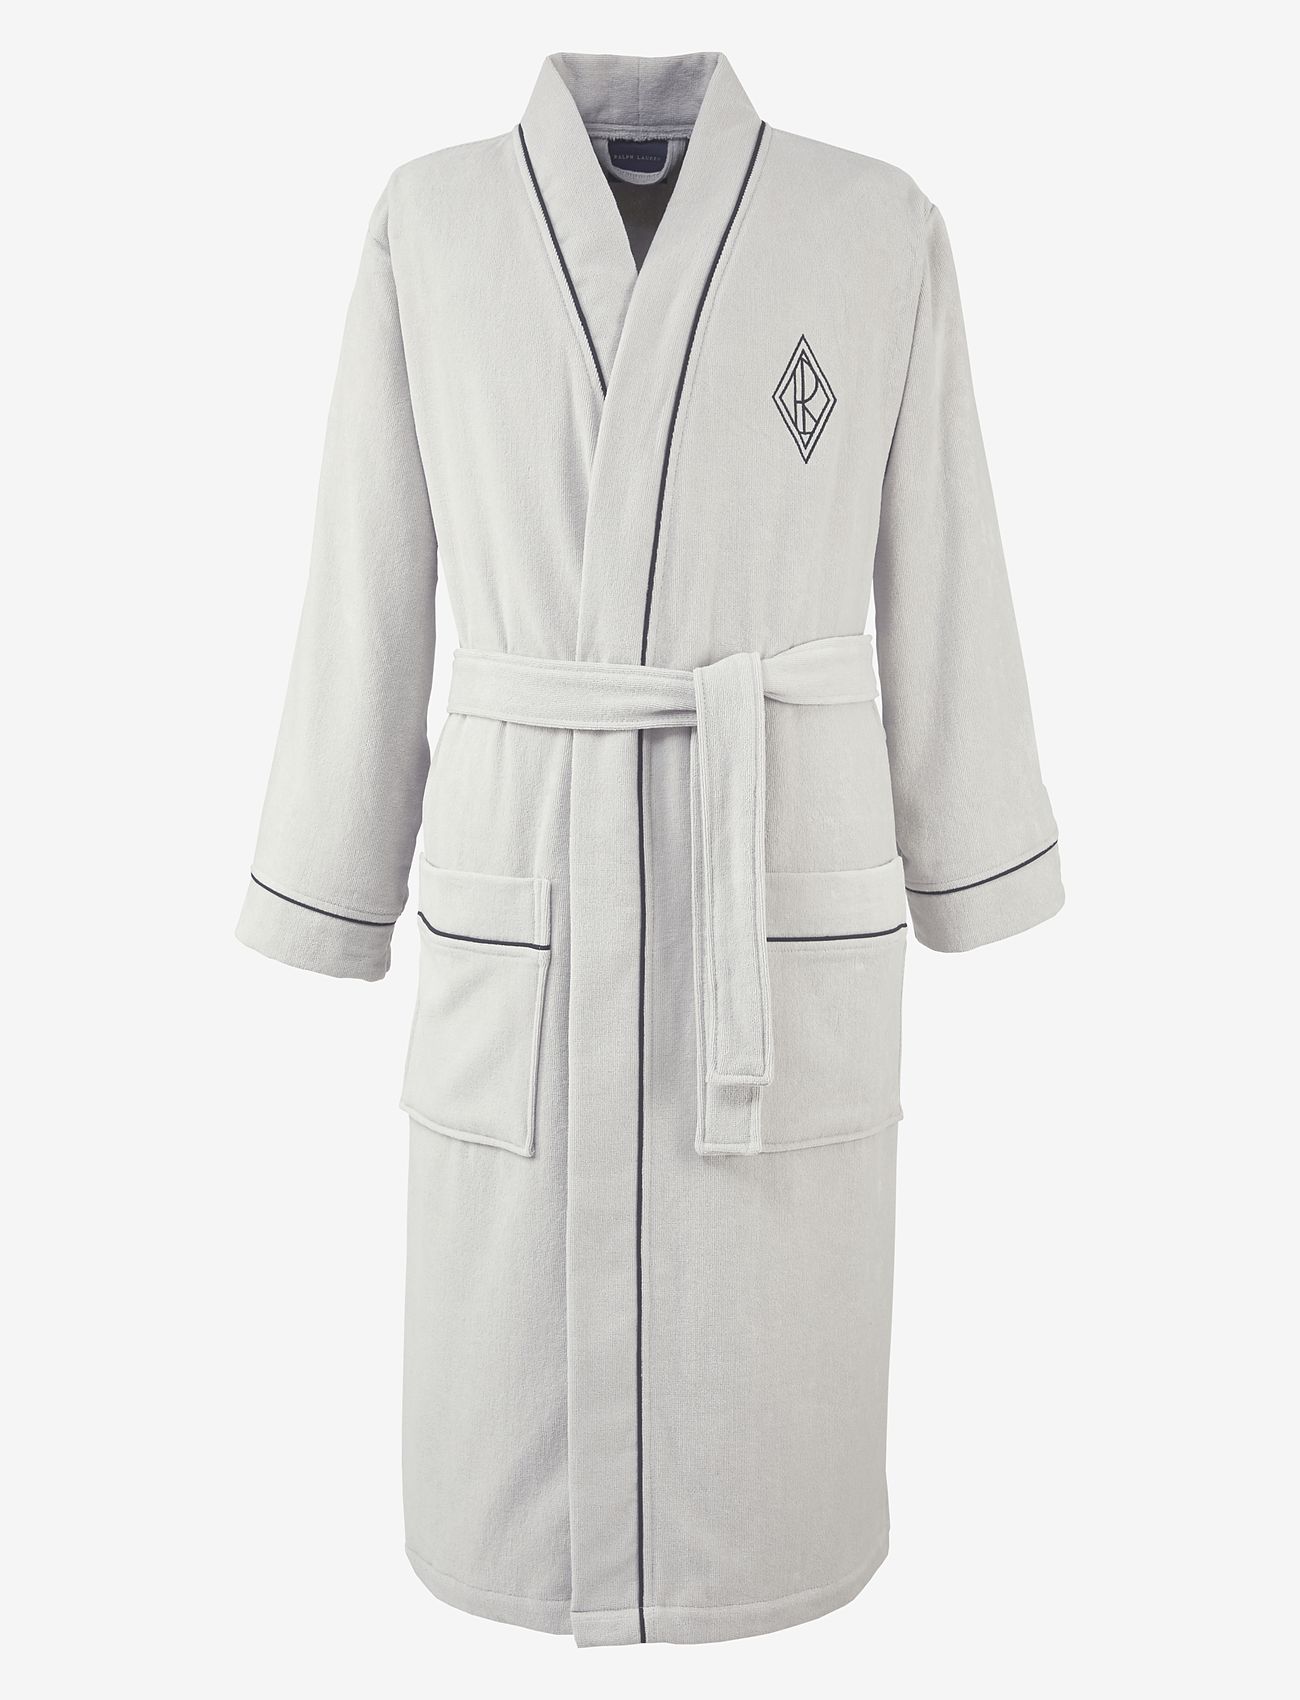 Ralph Lauren Home - PARKROW Bath robe - sorteren op prijs - stonewa - 1